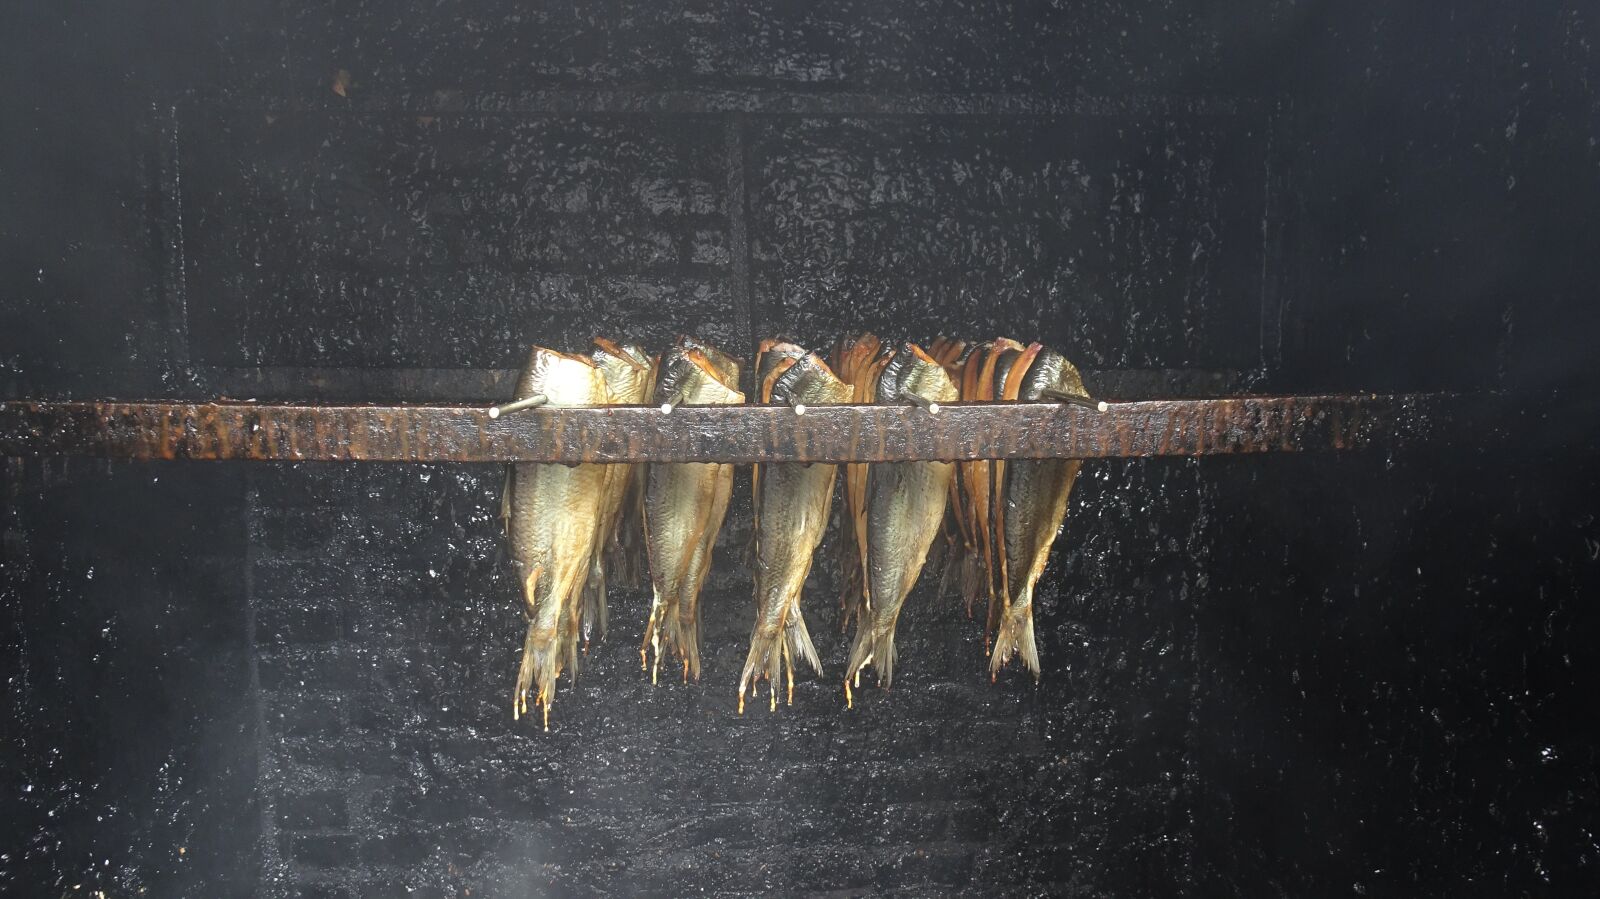 Sony DSC-HX90 sample photo. Smoked herring, fish, smoked photography